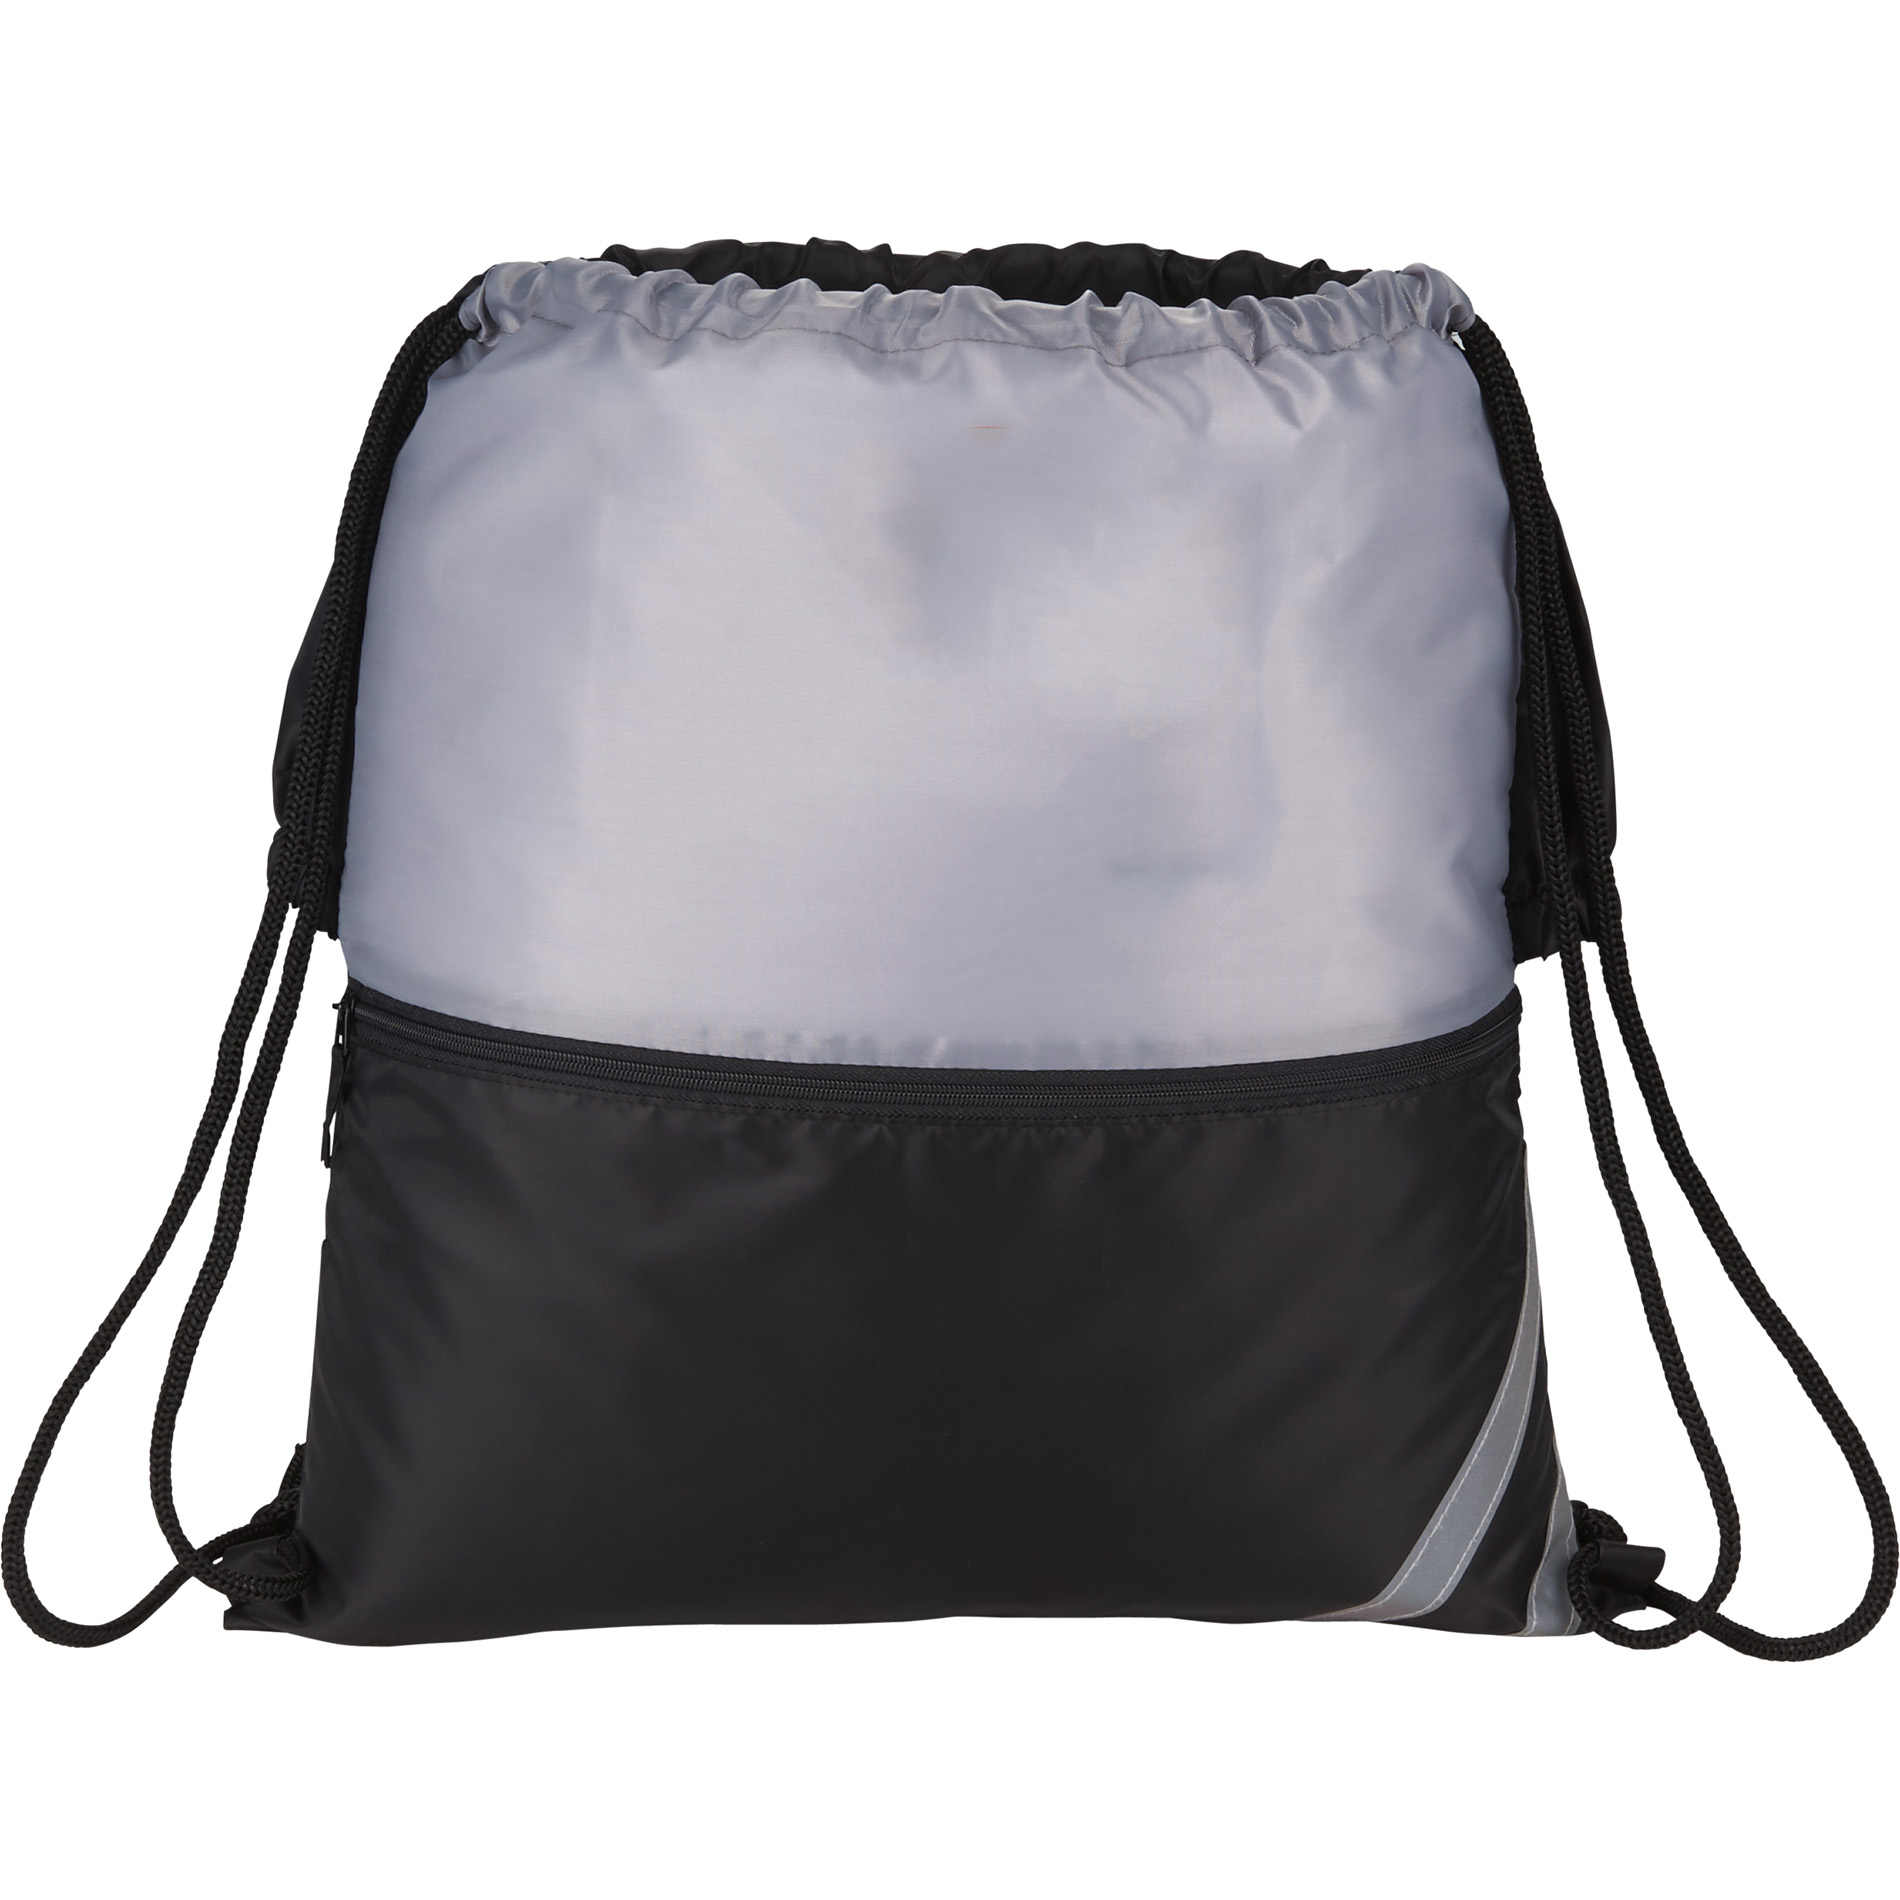 BackSac 3005-35 - Split Drawstring Bag